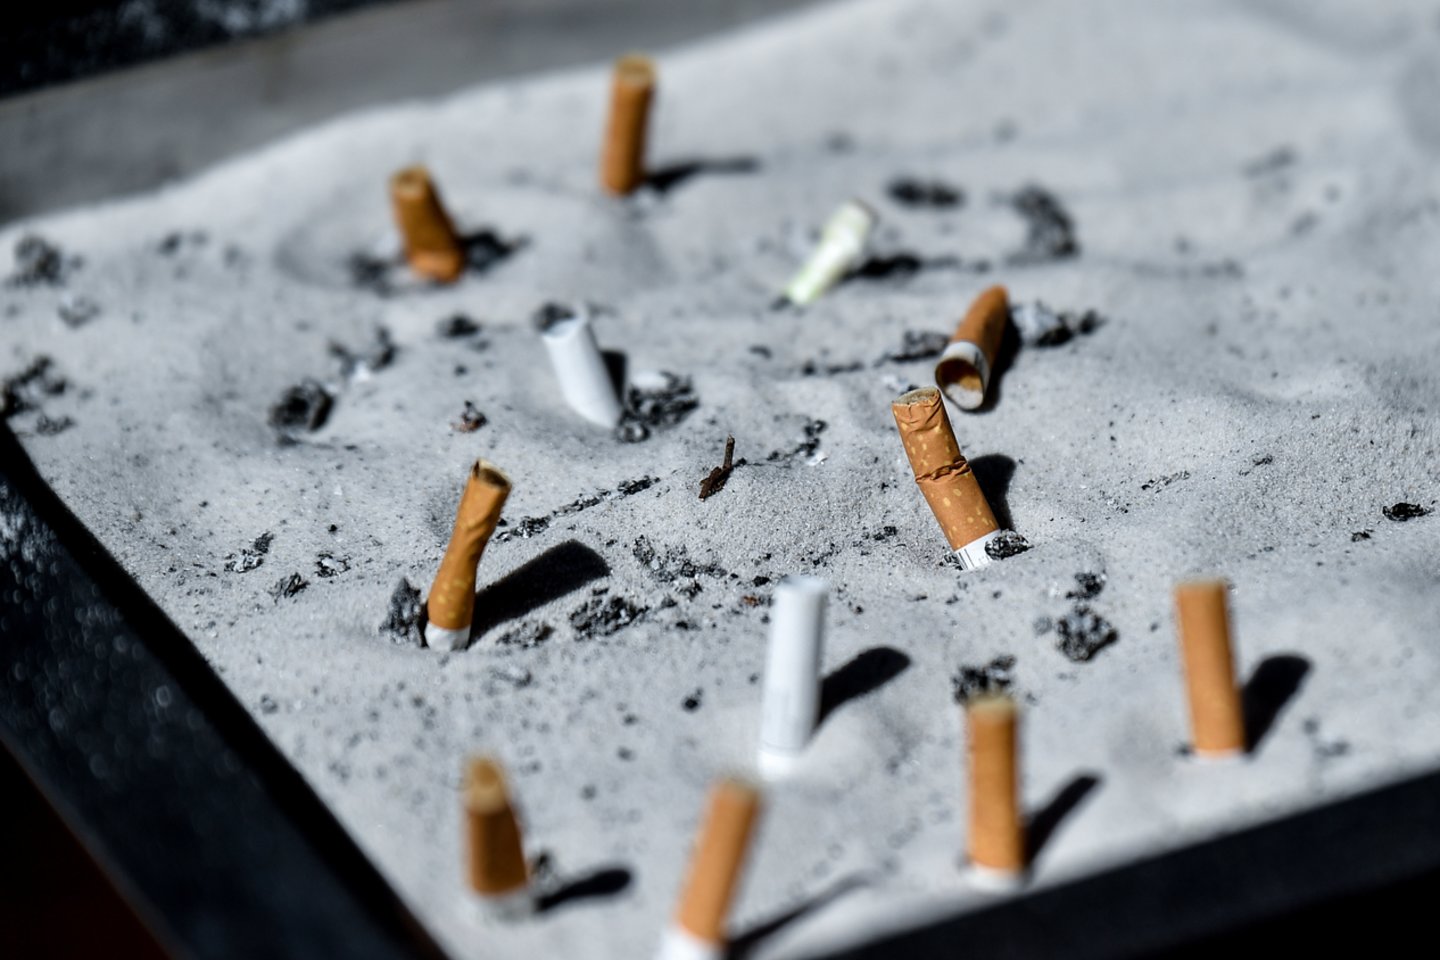 Daugelis žmonių tiesiog nežino visų grėsmių, kurias sukelia rūkymas.<br> V.Ščiavinsko nuotr. 